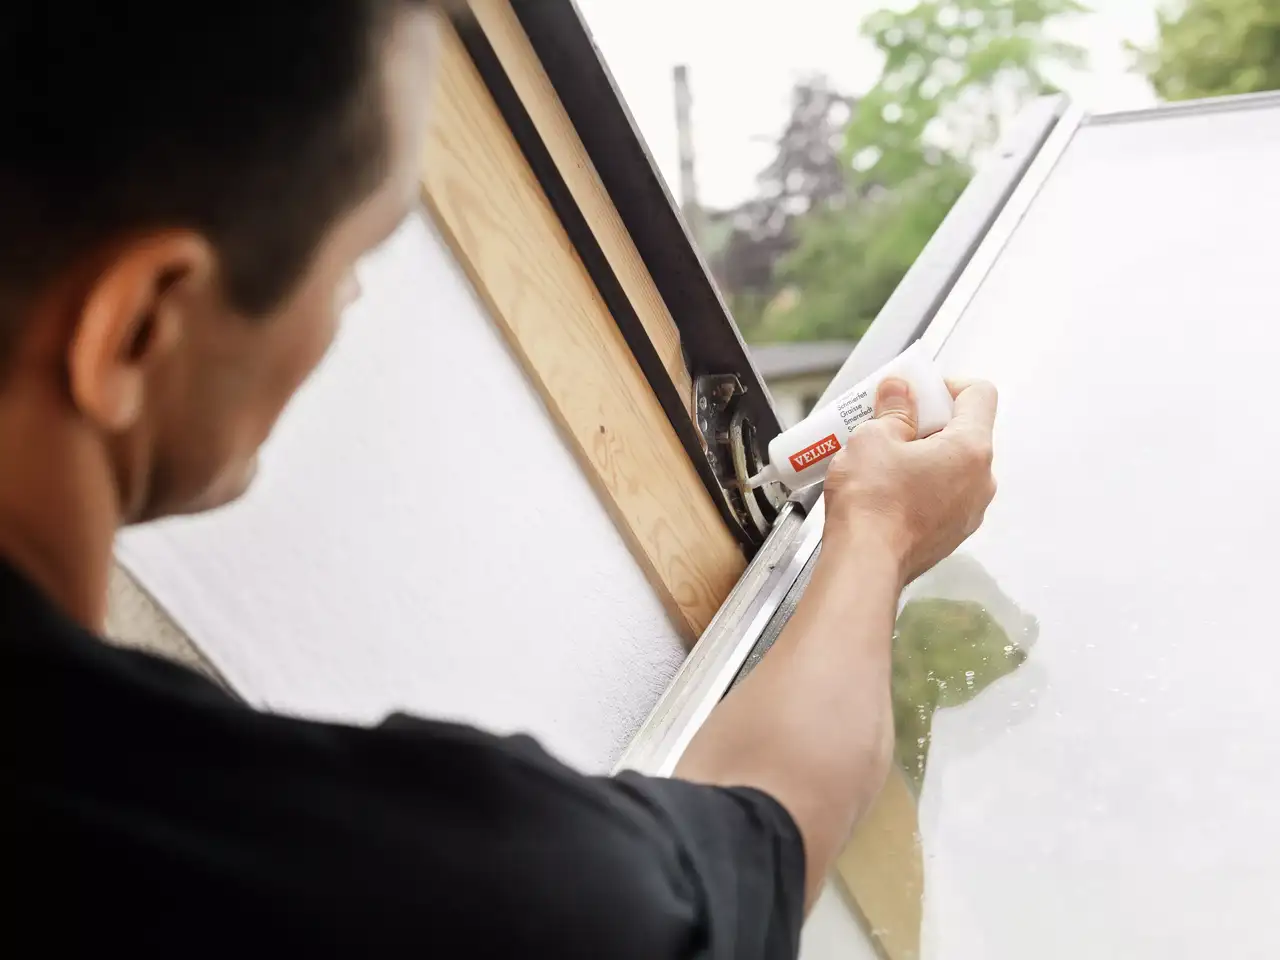 Nahaufnahme von Händen, die ein VELUX Dachflächenfenster einbauen, um die Raumbeleuchtung zu verbessern.